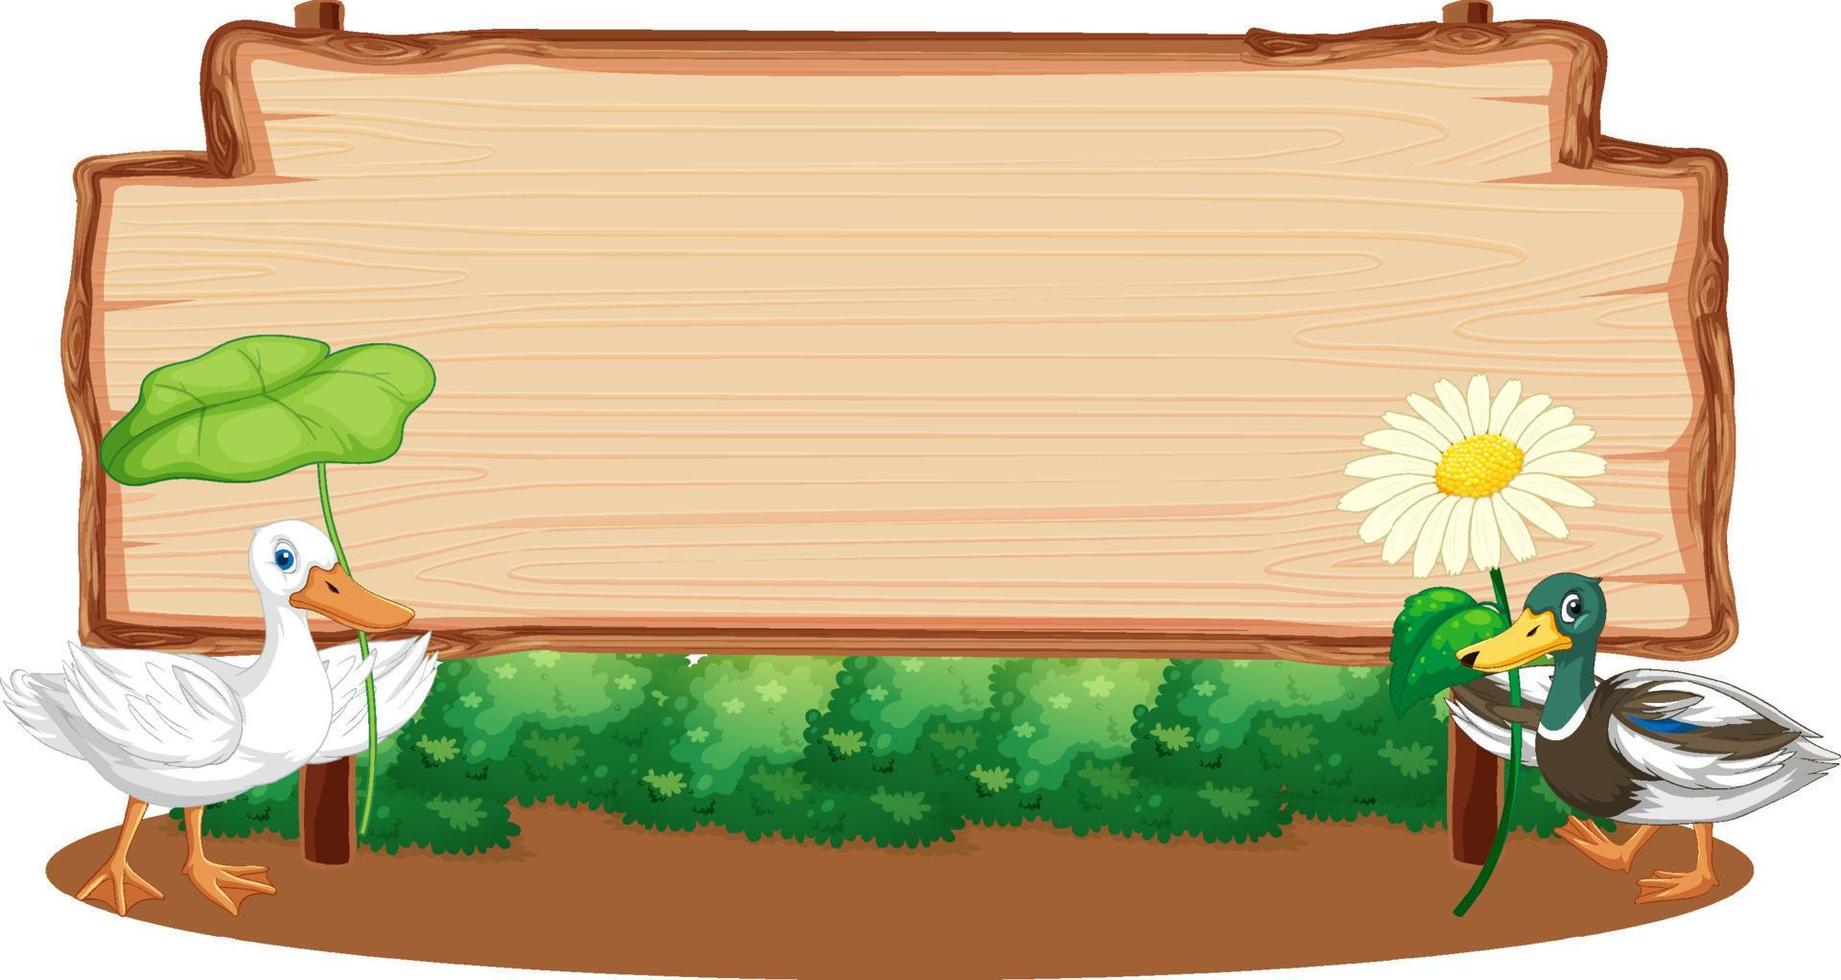 tabuleta de madeira em branco com sapo em estilo cartoon vetor